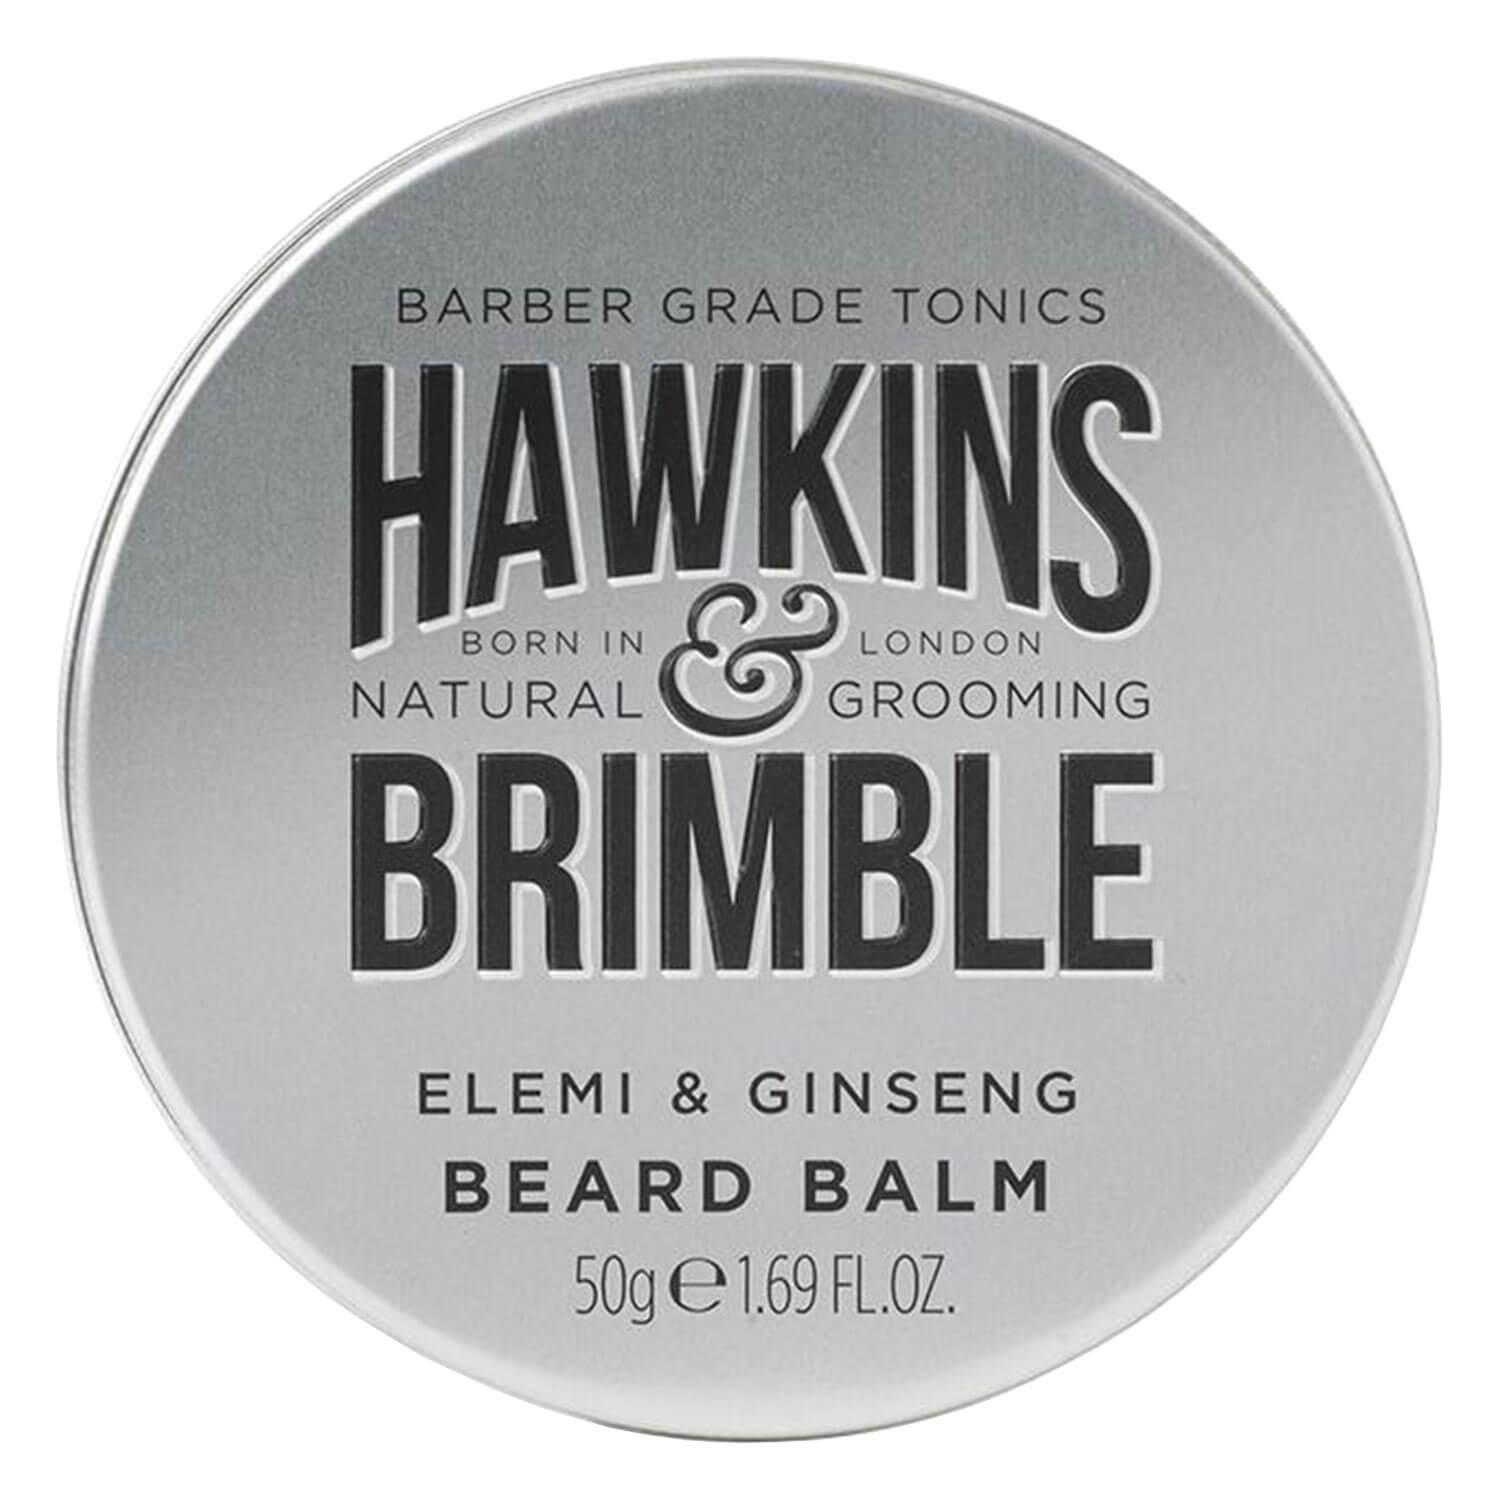 Hawkins & Brimble - Beard Balm